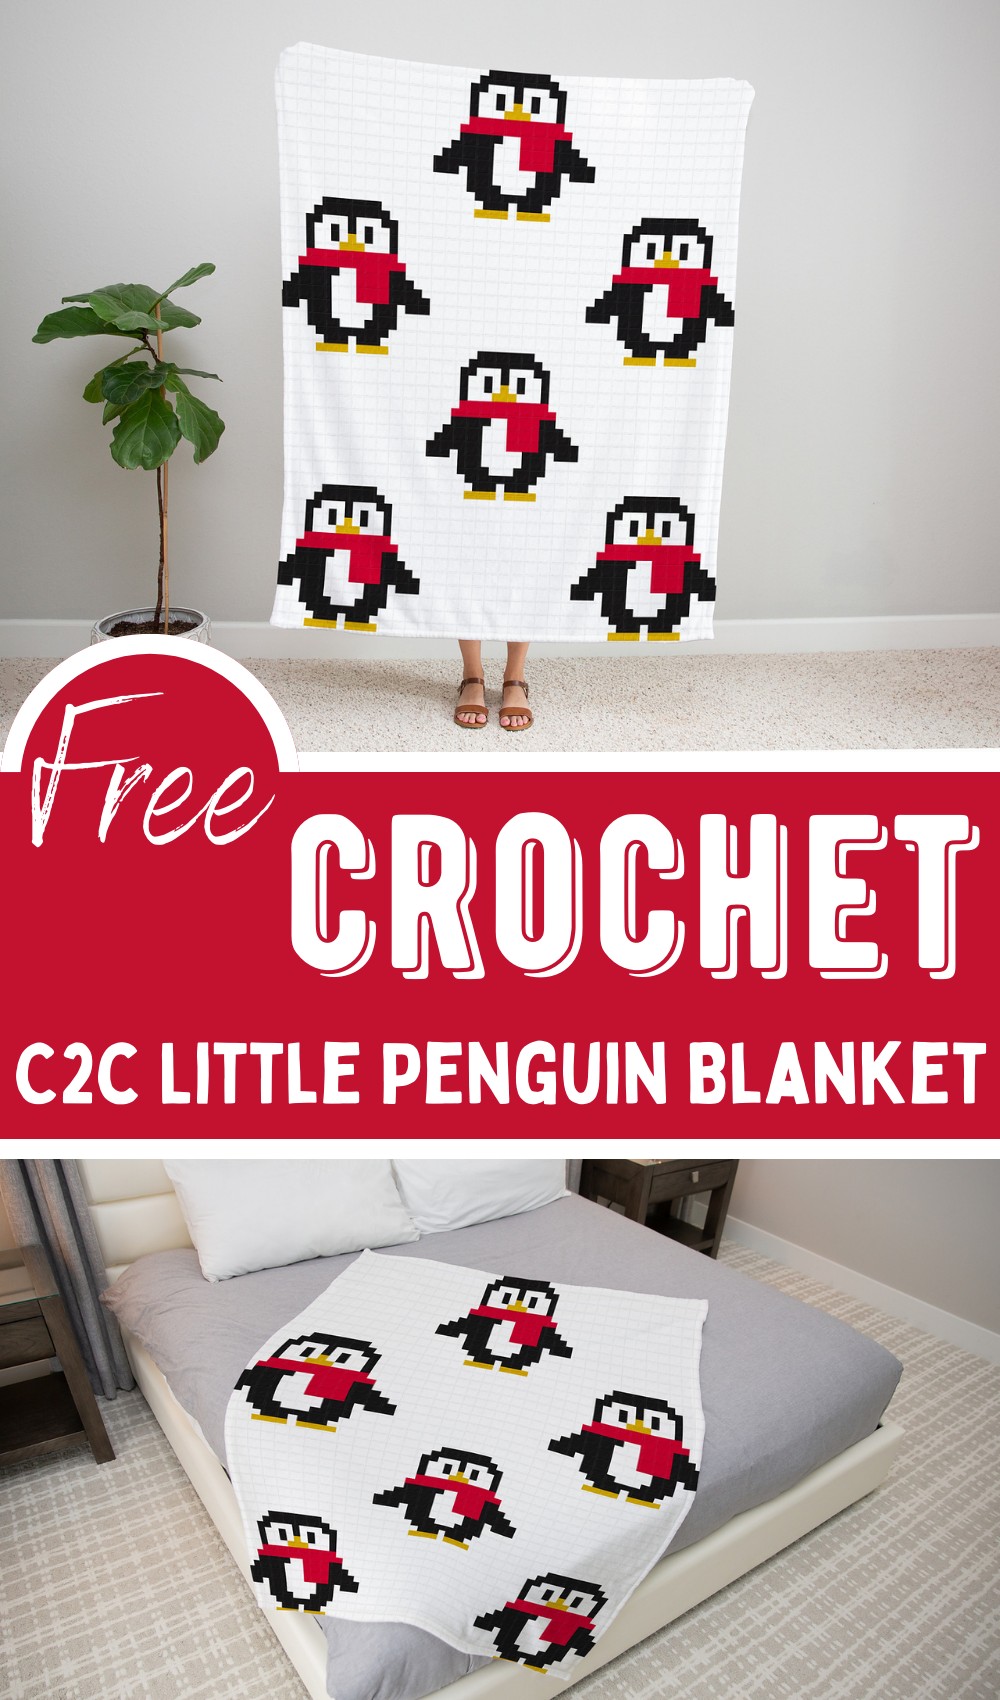 C2c Little Penguin Blanket